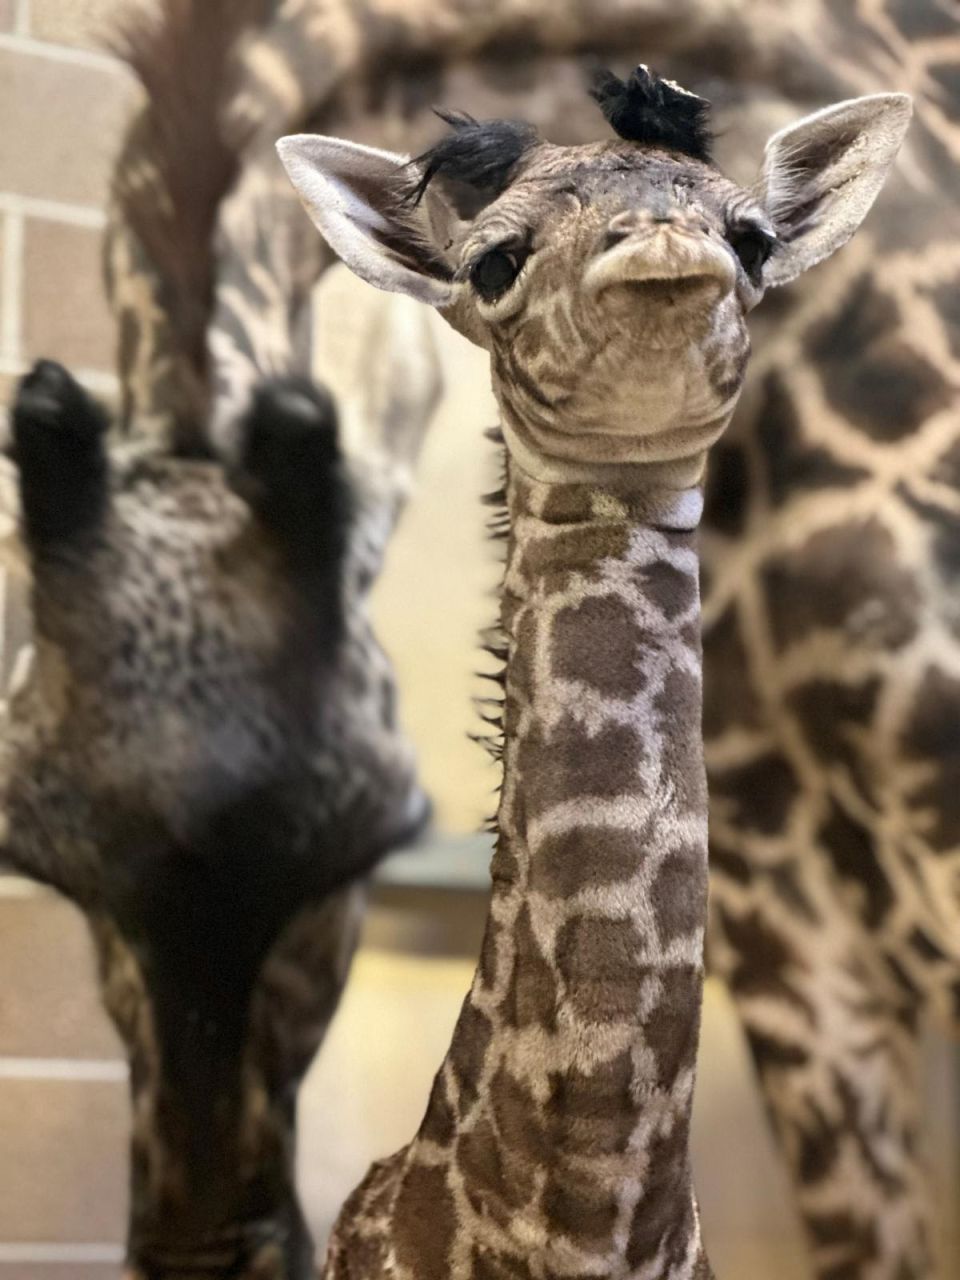 Sacramento Zoo Celebrates the Birth of Masai Giraffe Calf